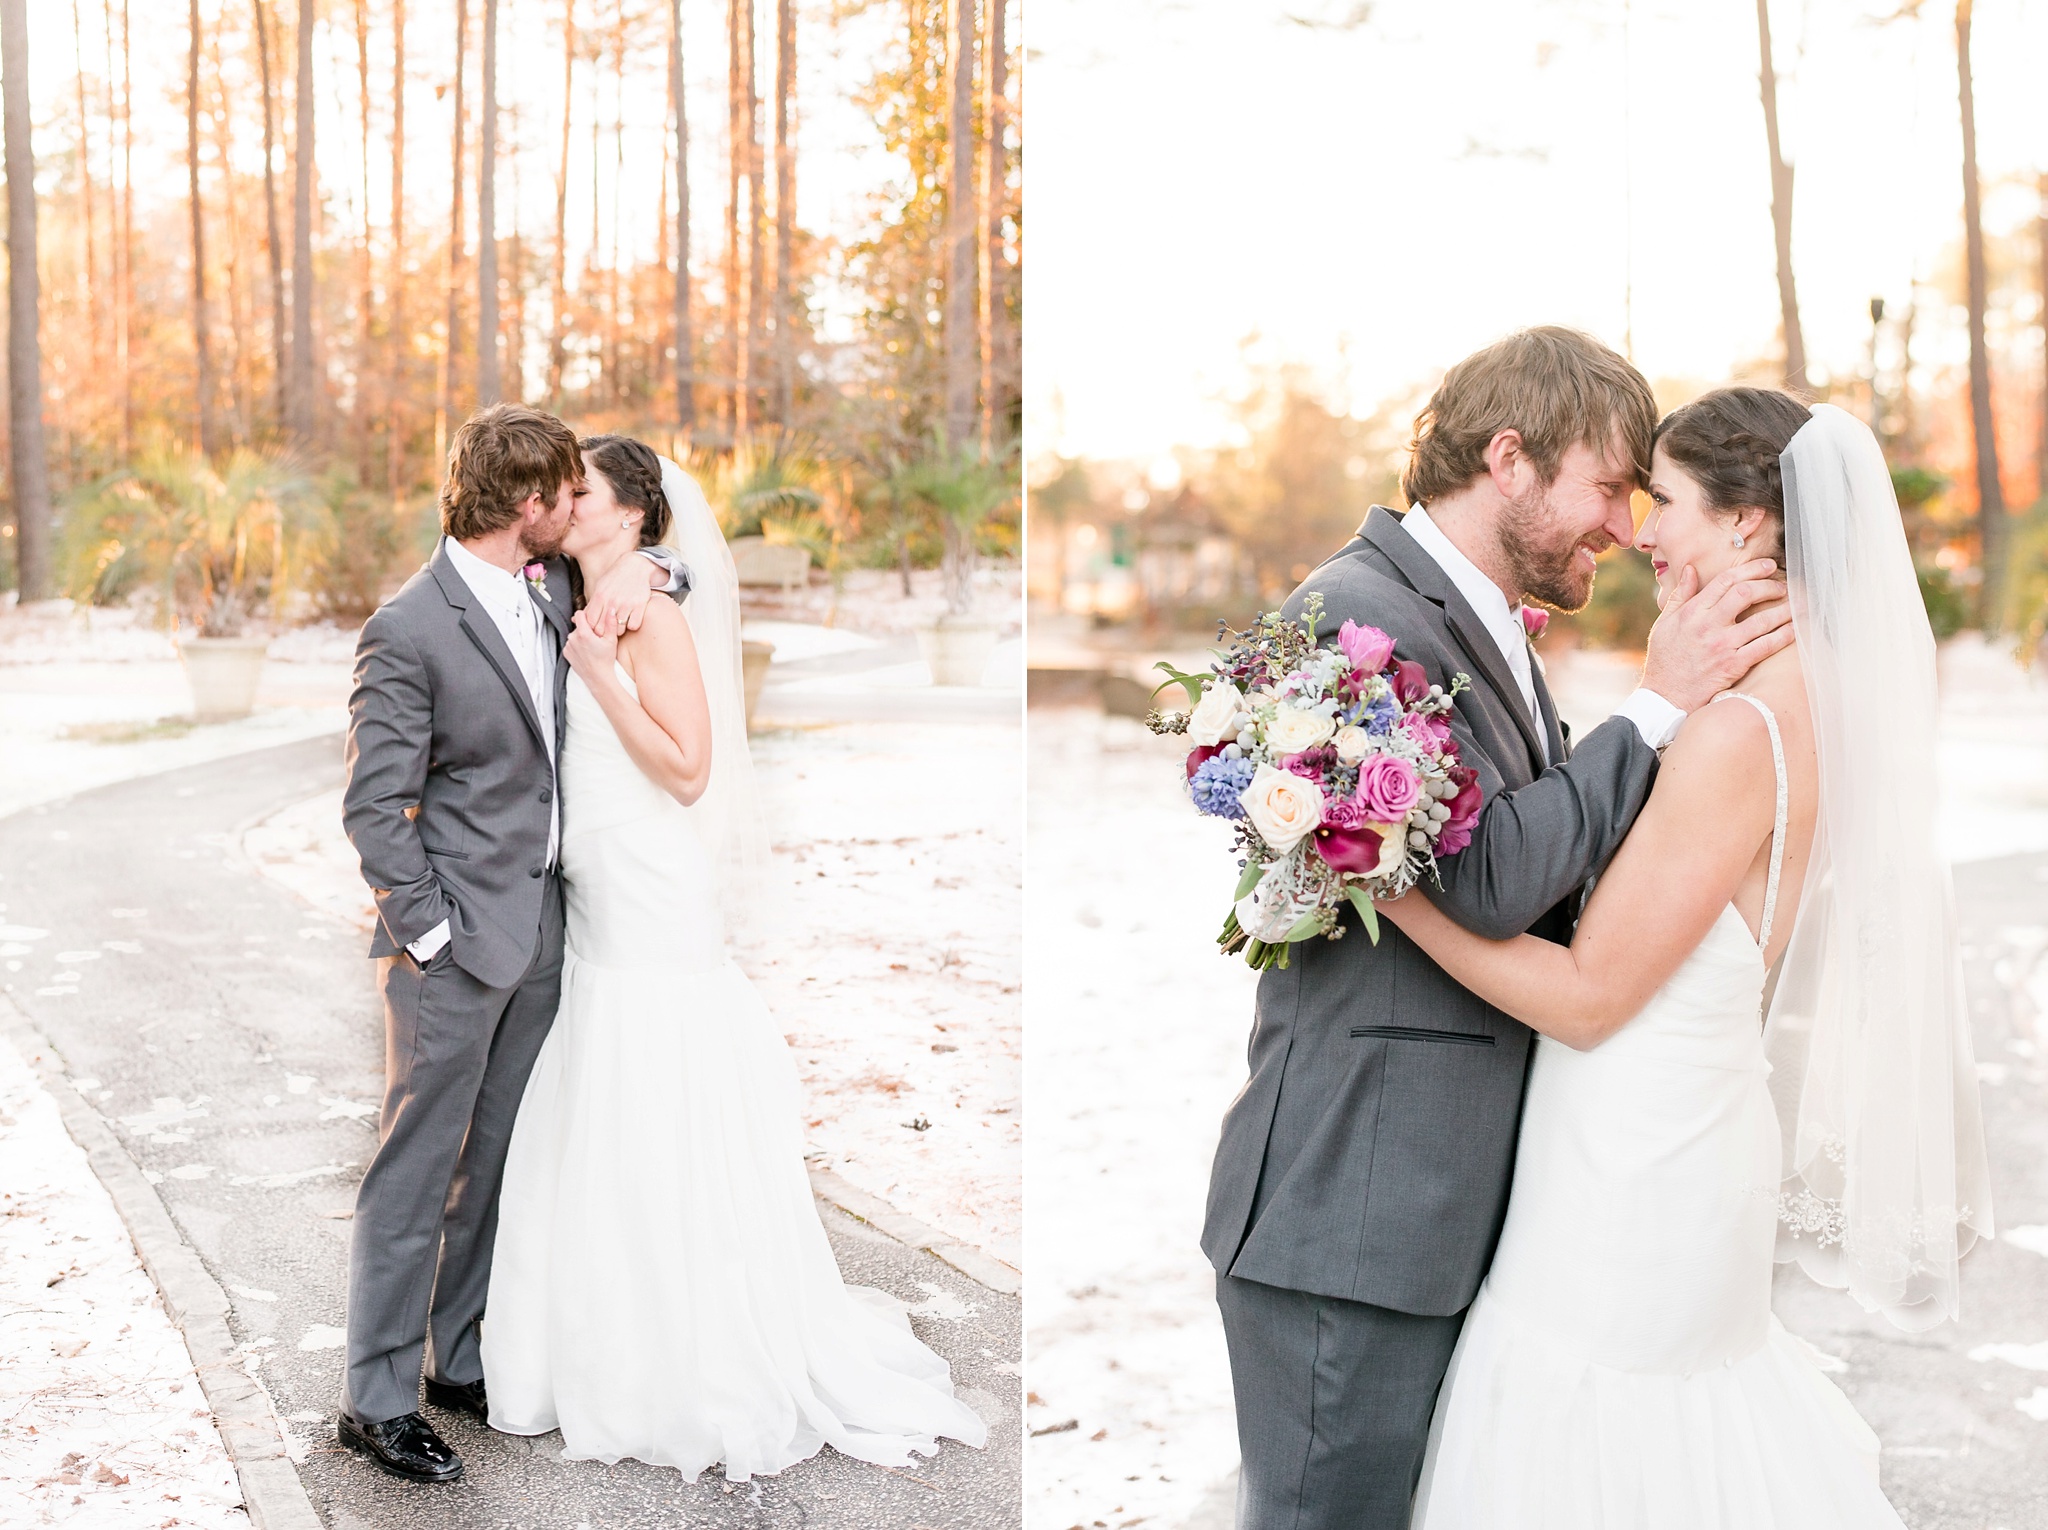 Snowy Winter Aldridge Gardens Wedding | Birmingham Alabama Wedding Photographers_0050.jpg